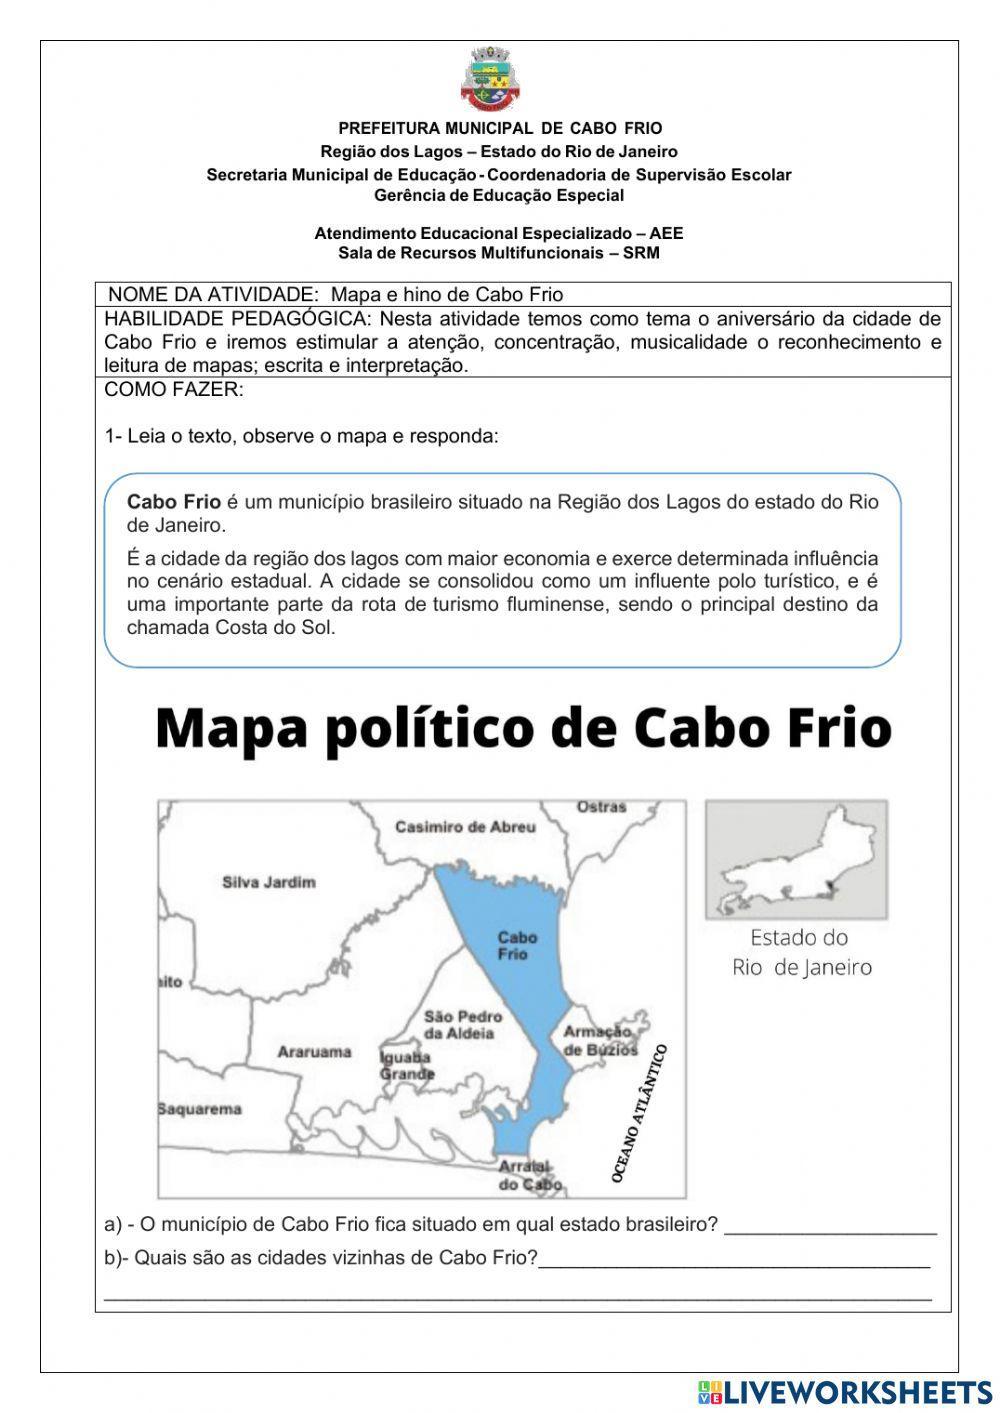 Mapa de Cabo Frio